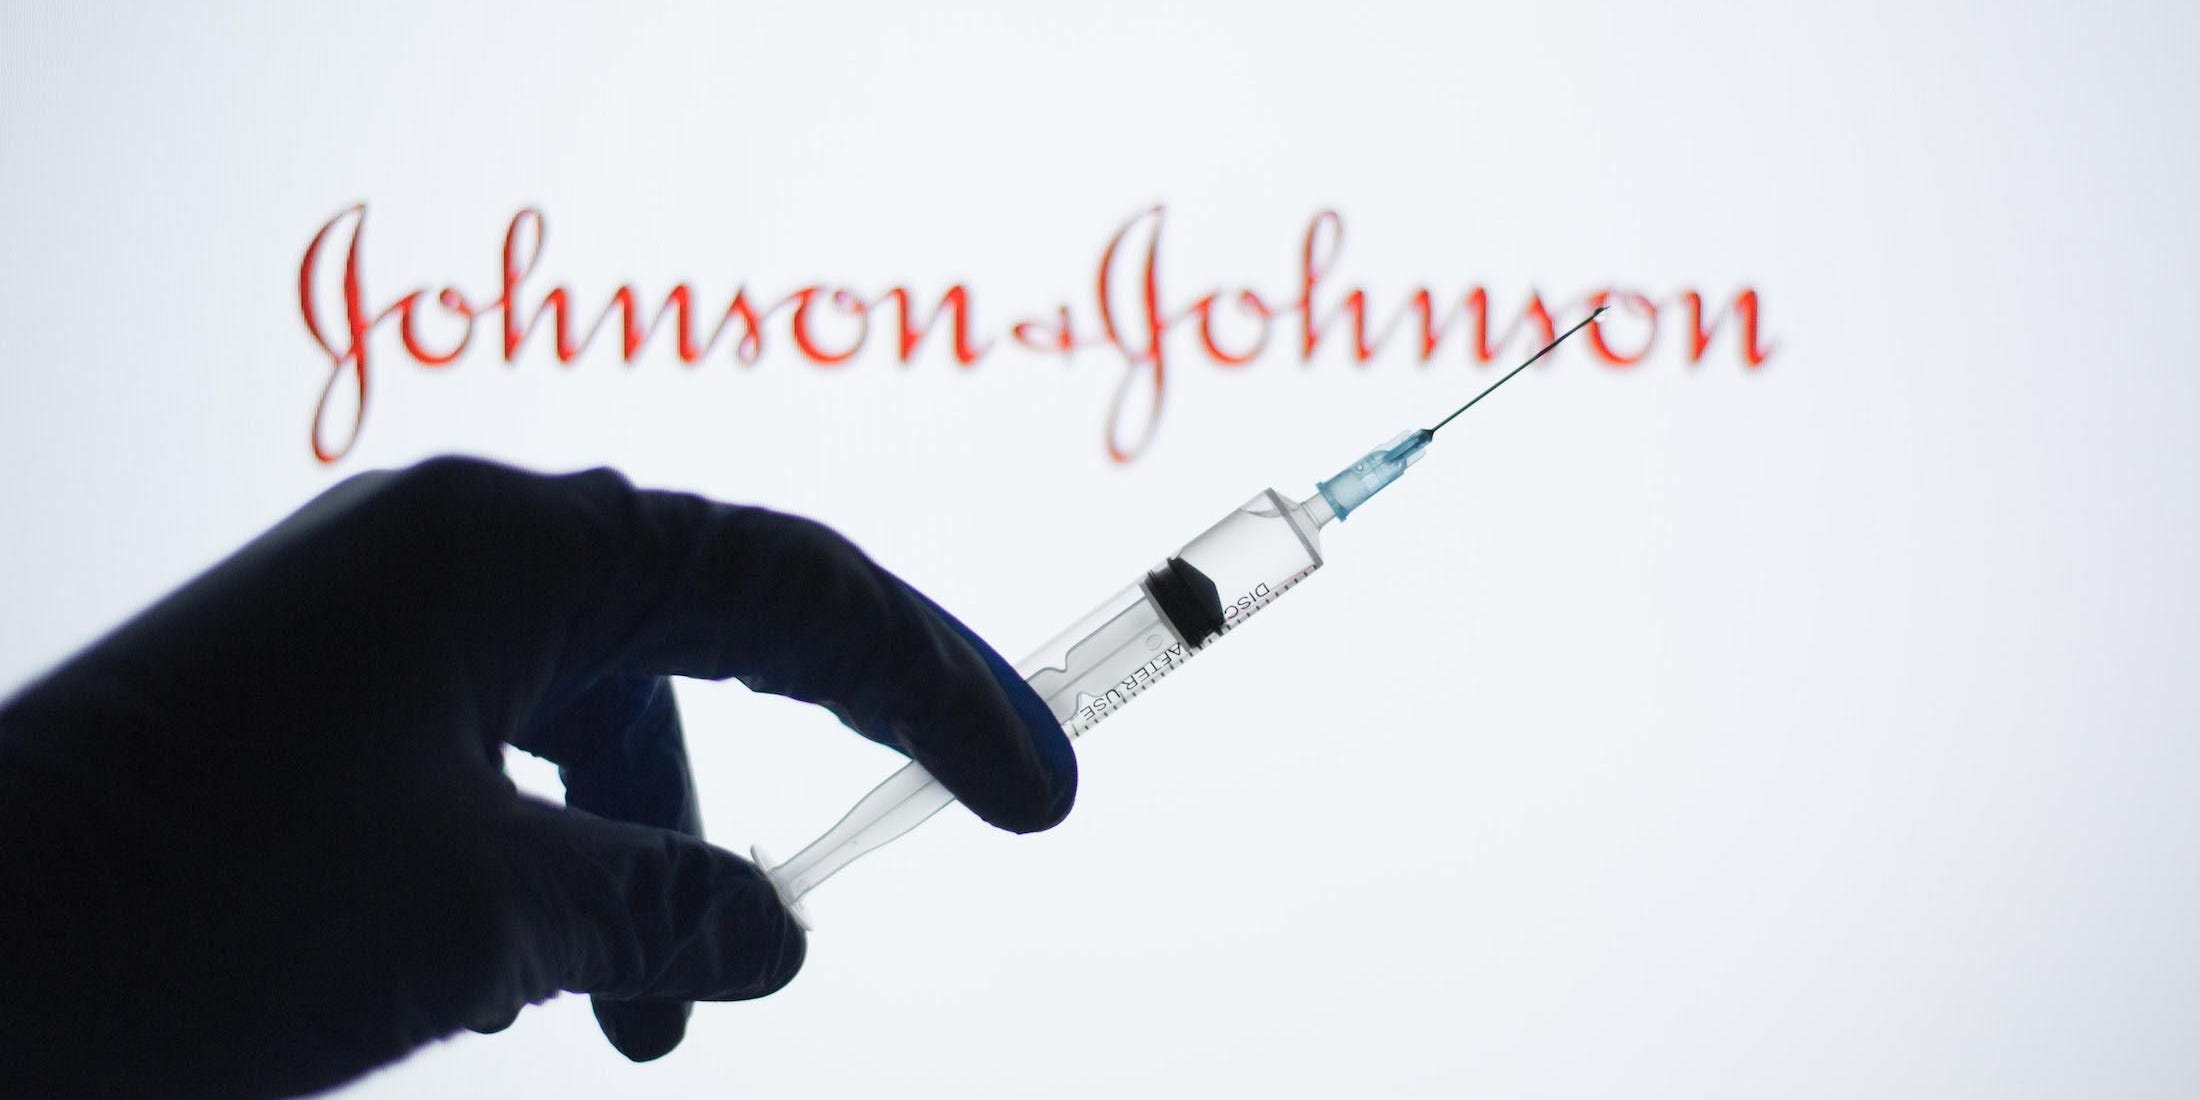 johnson and johnson covid vaccine